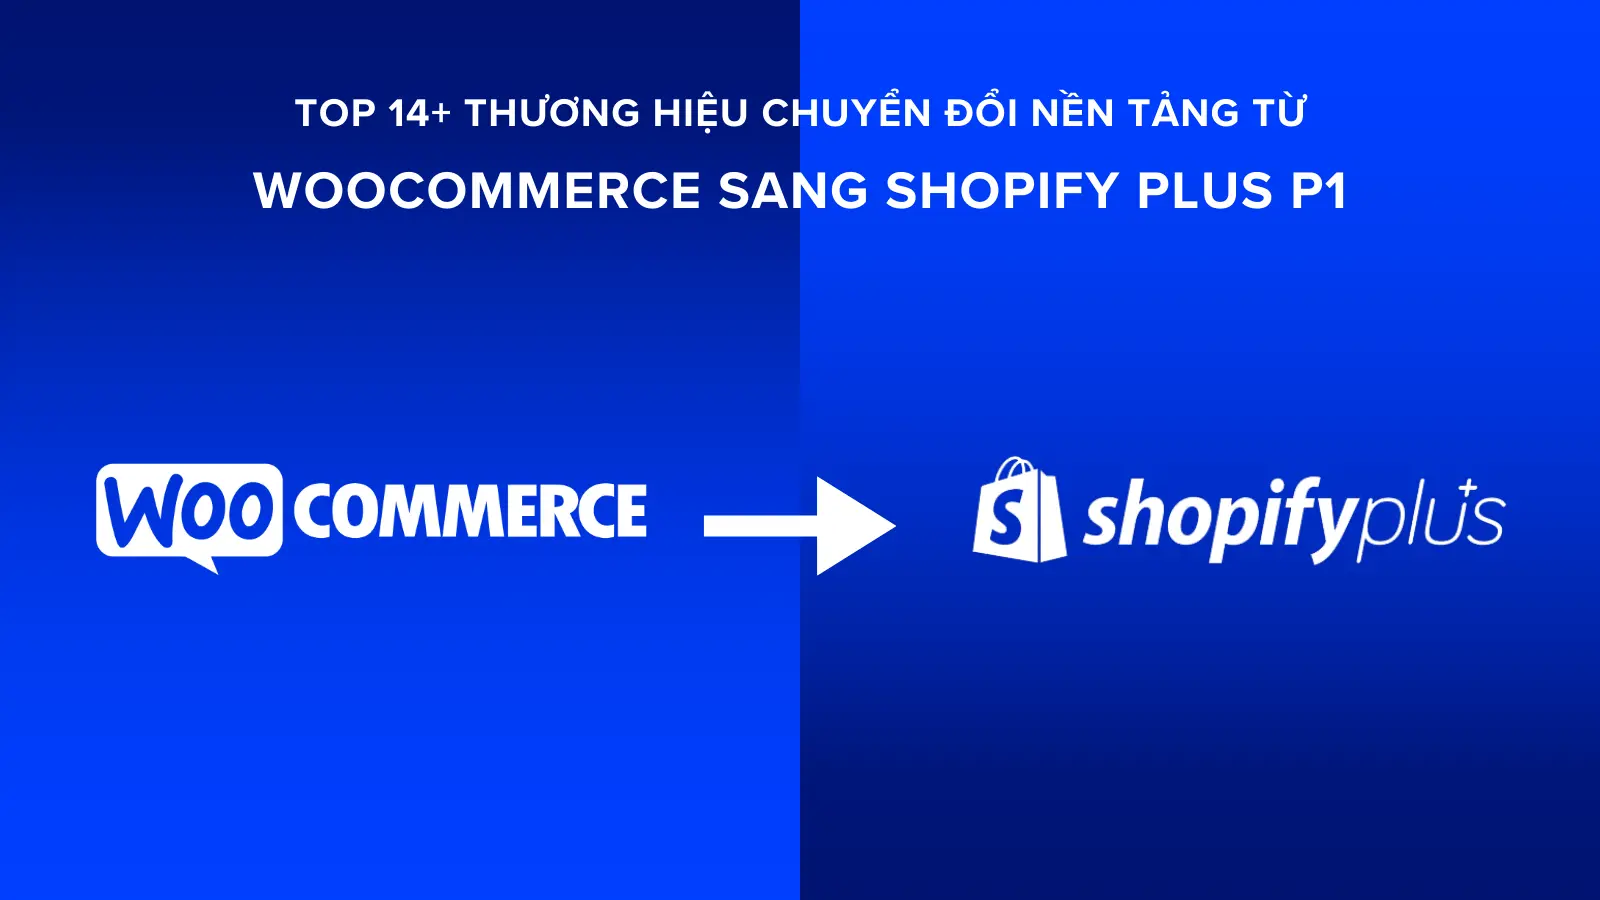 Top 14+ Thương Hiệu Chuyển Đổi Nền Tảng từ WooCommerce sang Shopify Plus P1